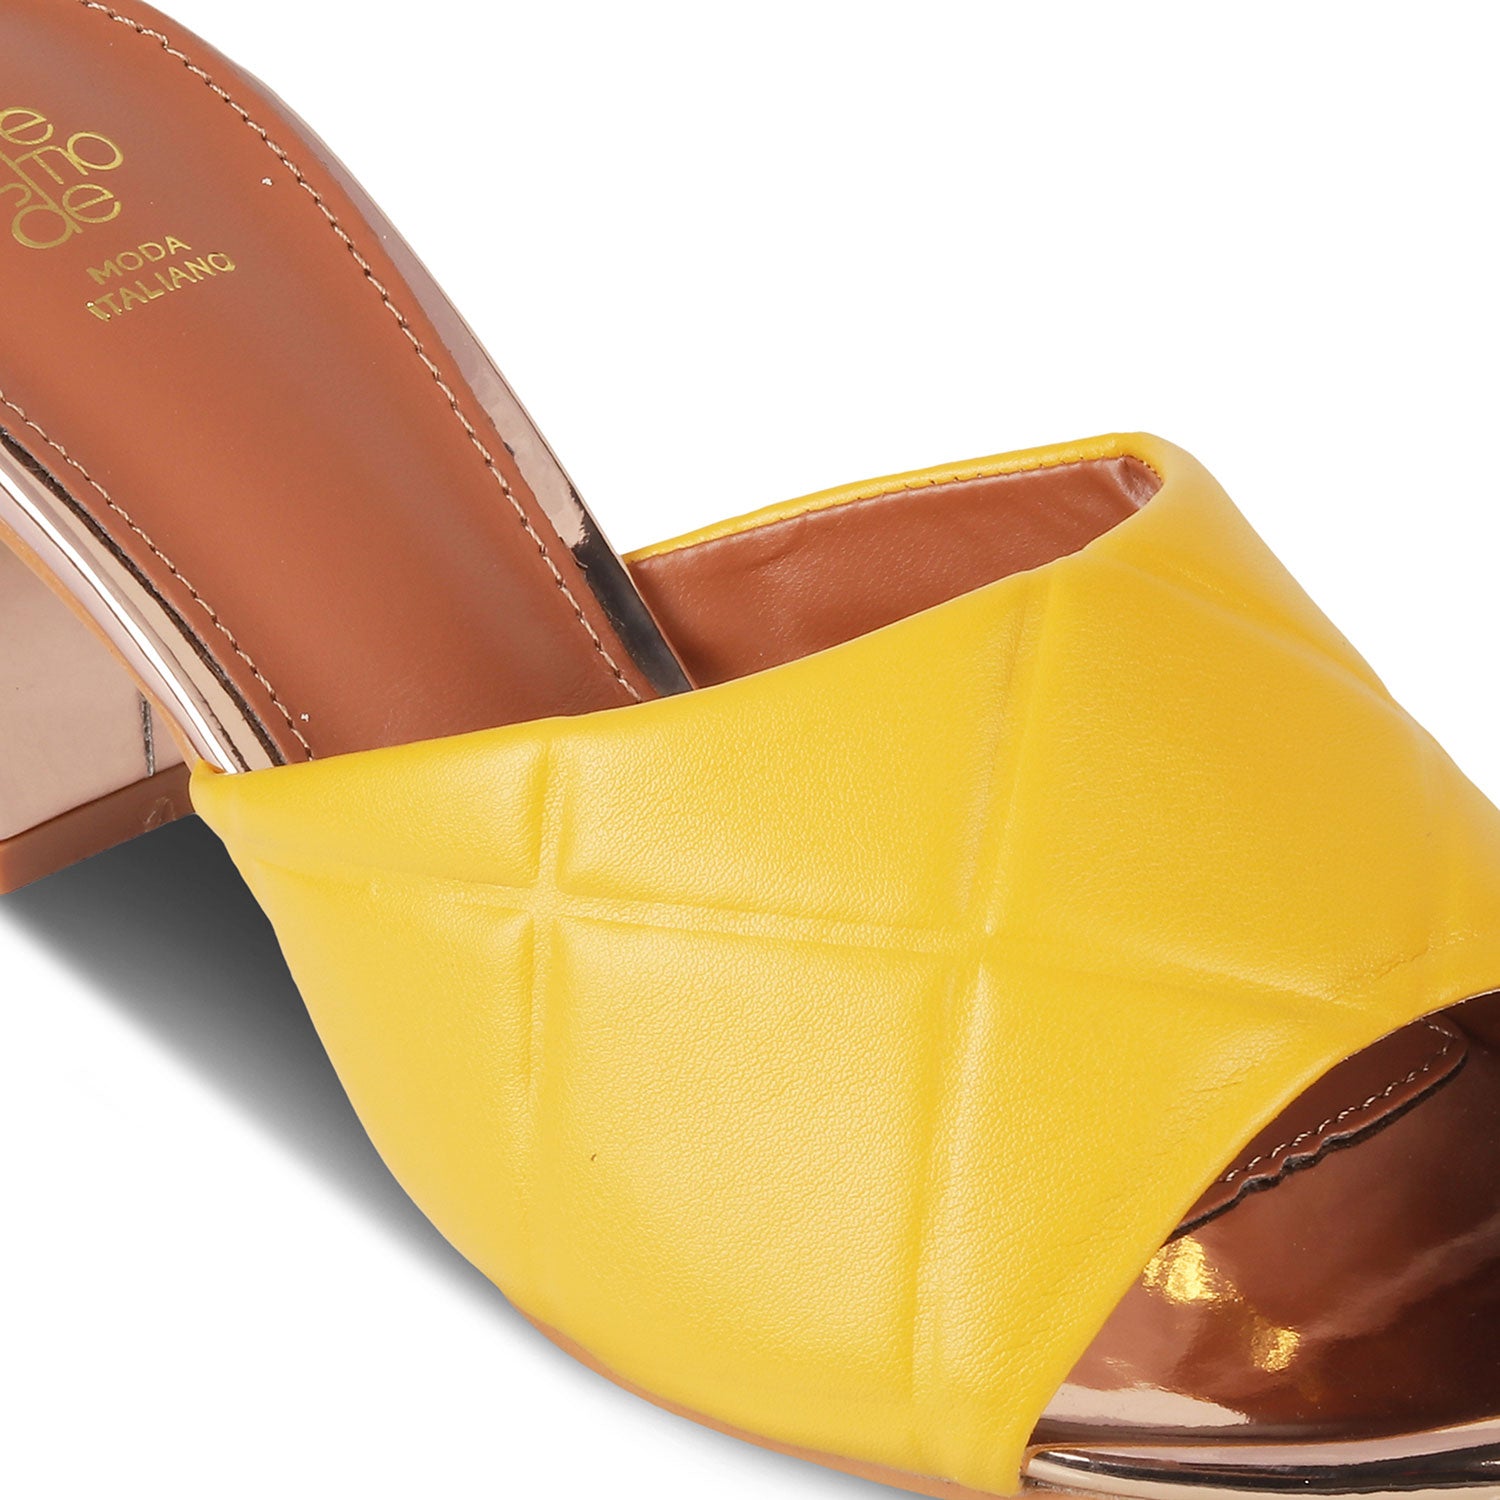 The Britle Yellow Women's Dress Block Heel Sandals Tresmode - Tresmode